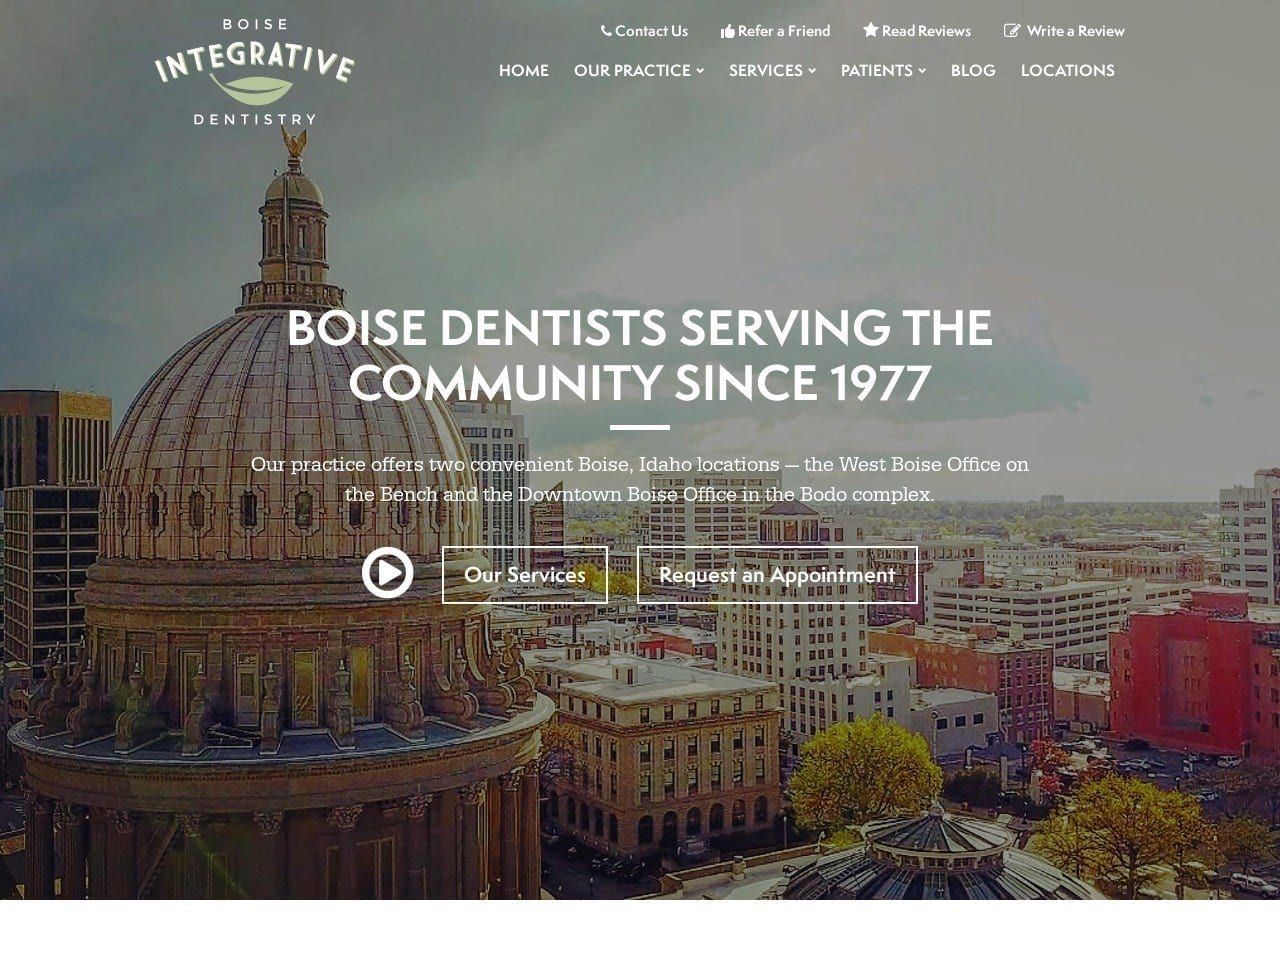 Bay Pointe Dental Bruce Steven M DDS Website Screenshot from boise-dentist.com